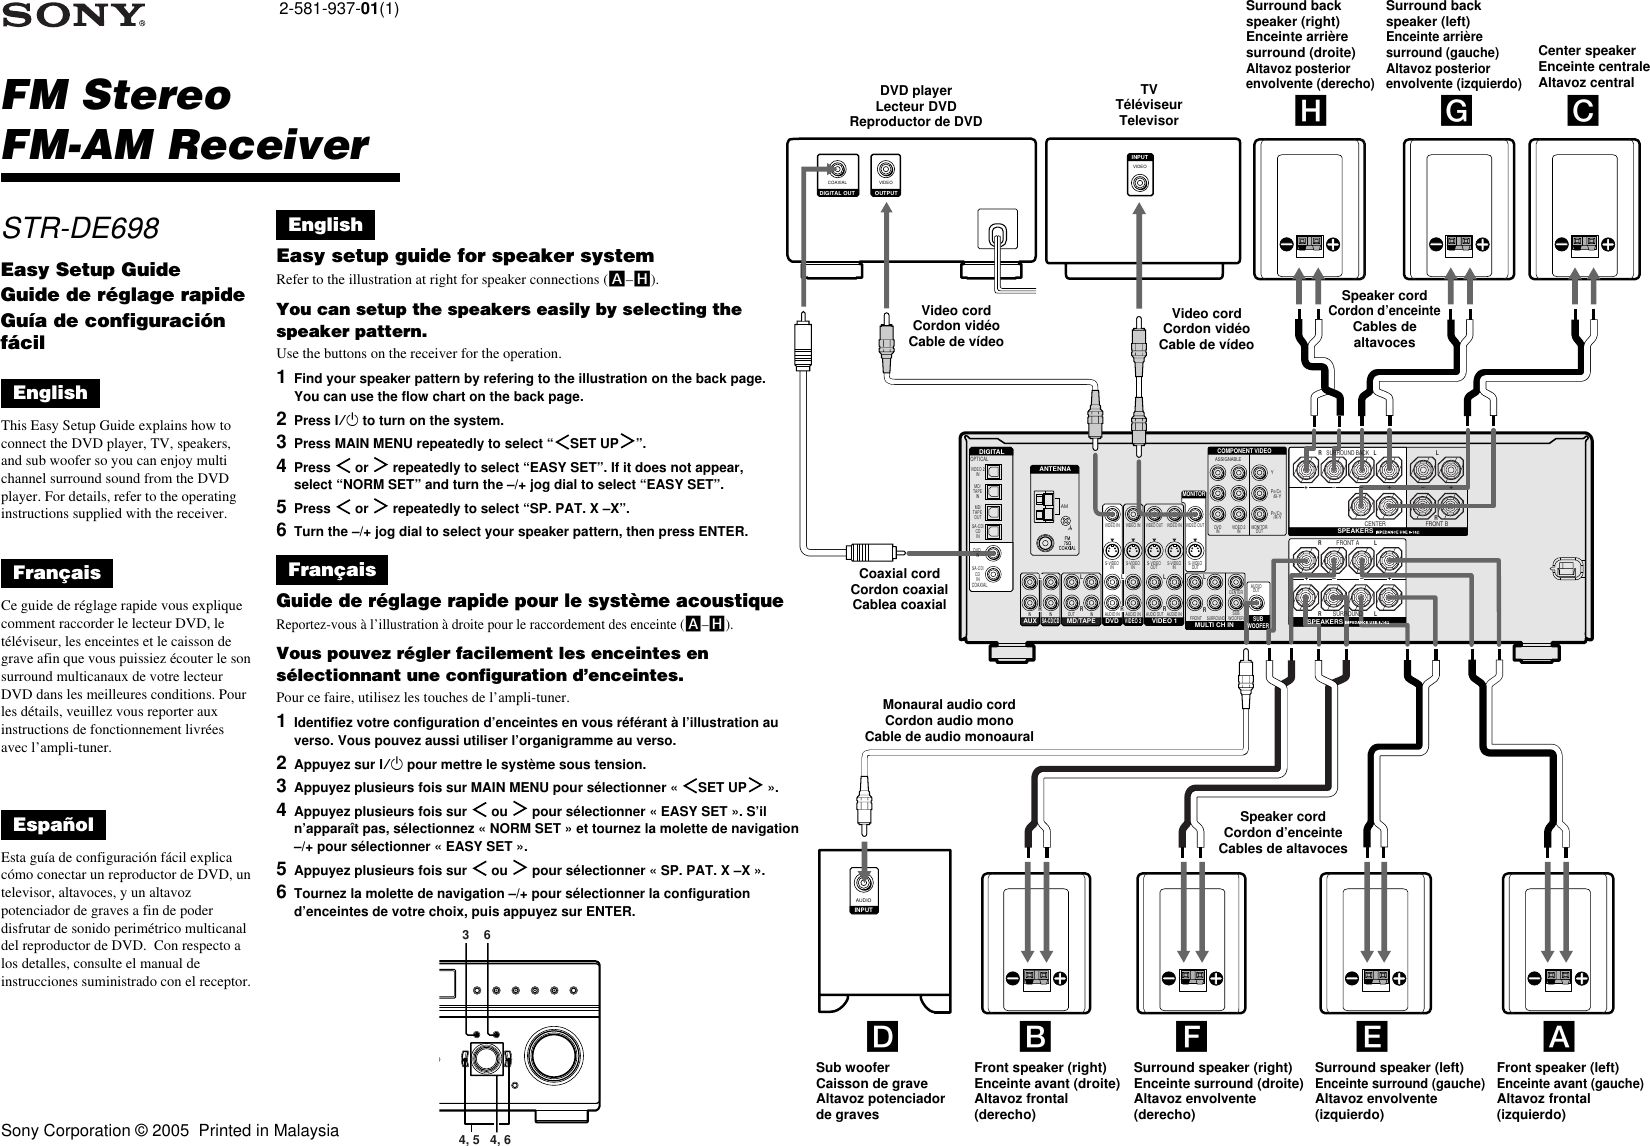 Page 1 of 2 - Sony STR-DE698 User Manual Easy Setup Guide STRDE698setup